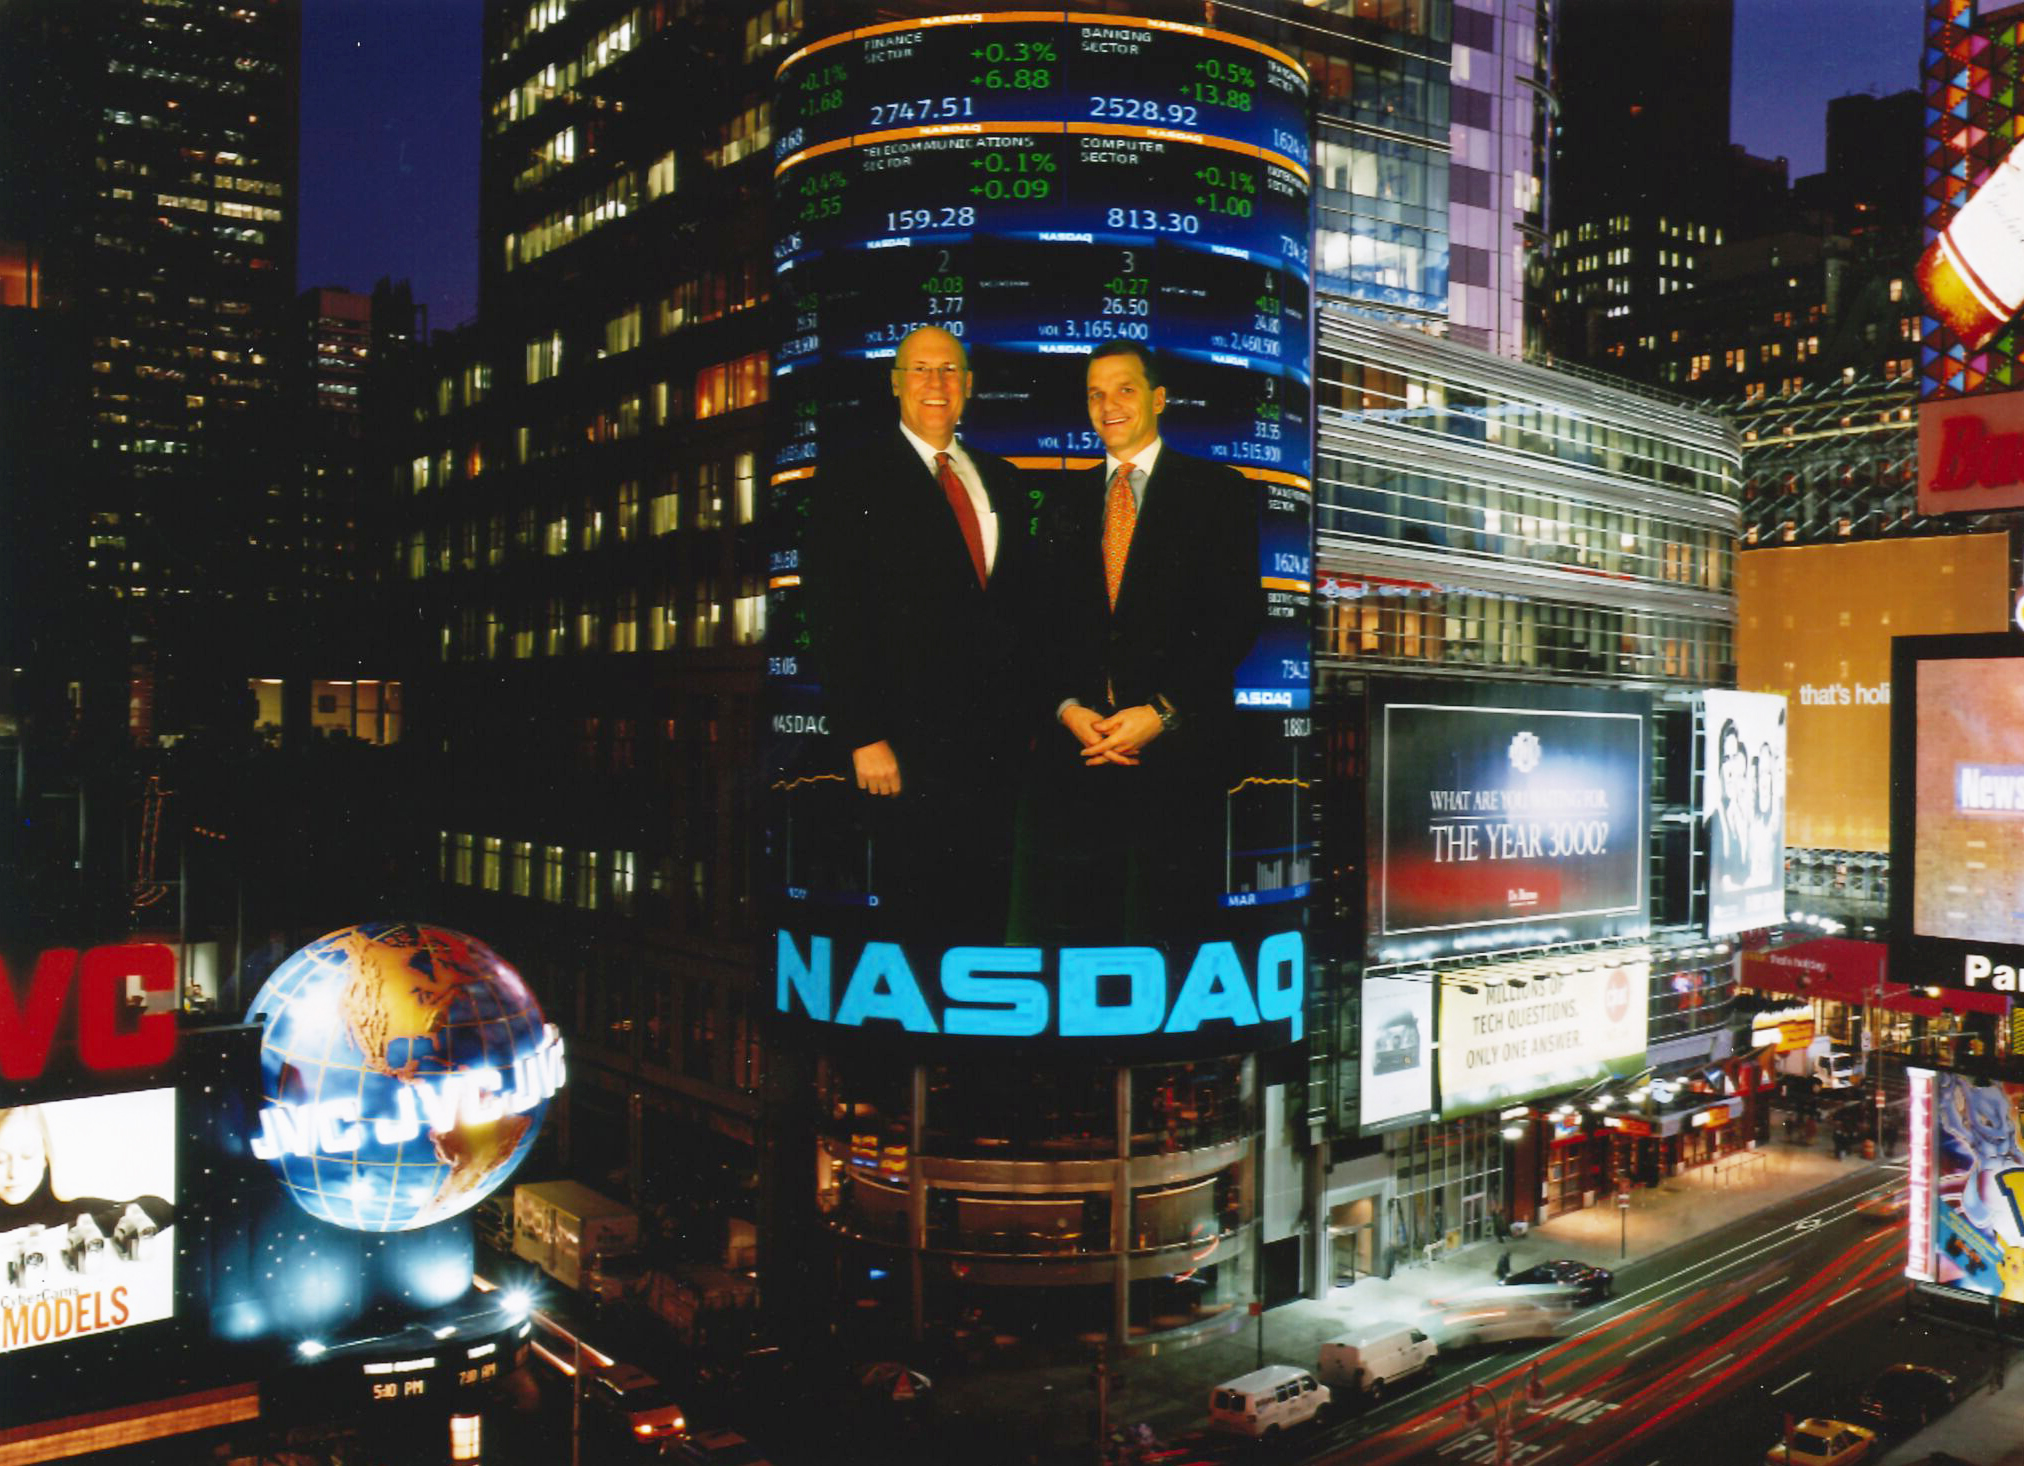 Mike Kubacki and David Findlay at NASDAQ